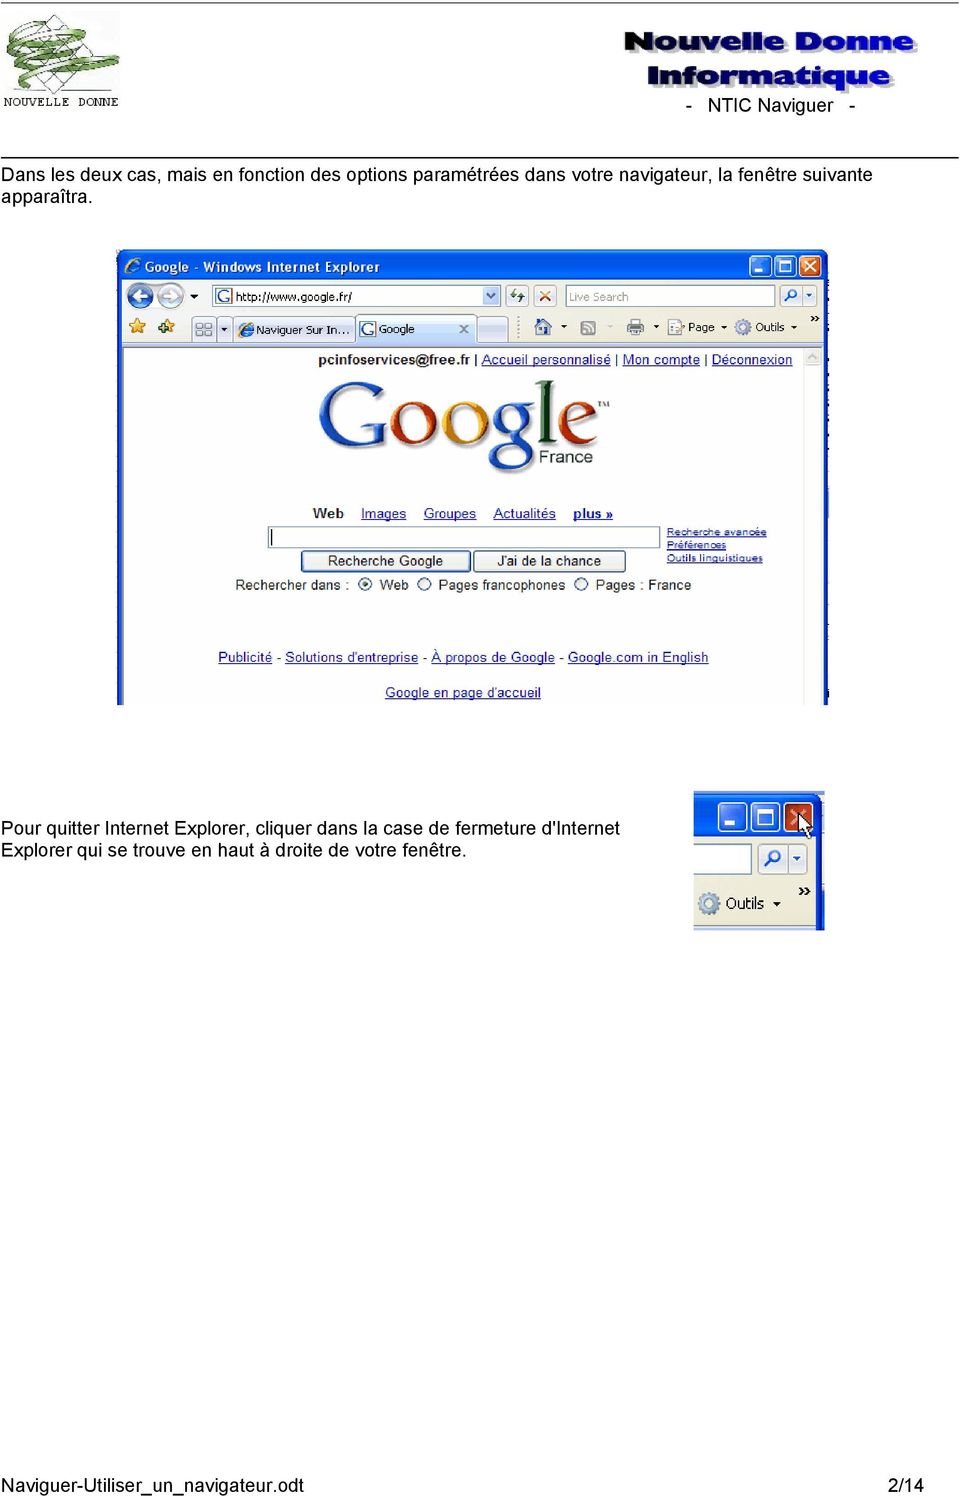 Pour quitter Internet Explorer, cliquer dans la case de fermeture